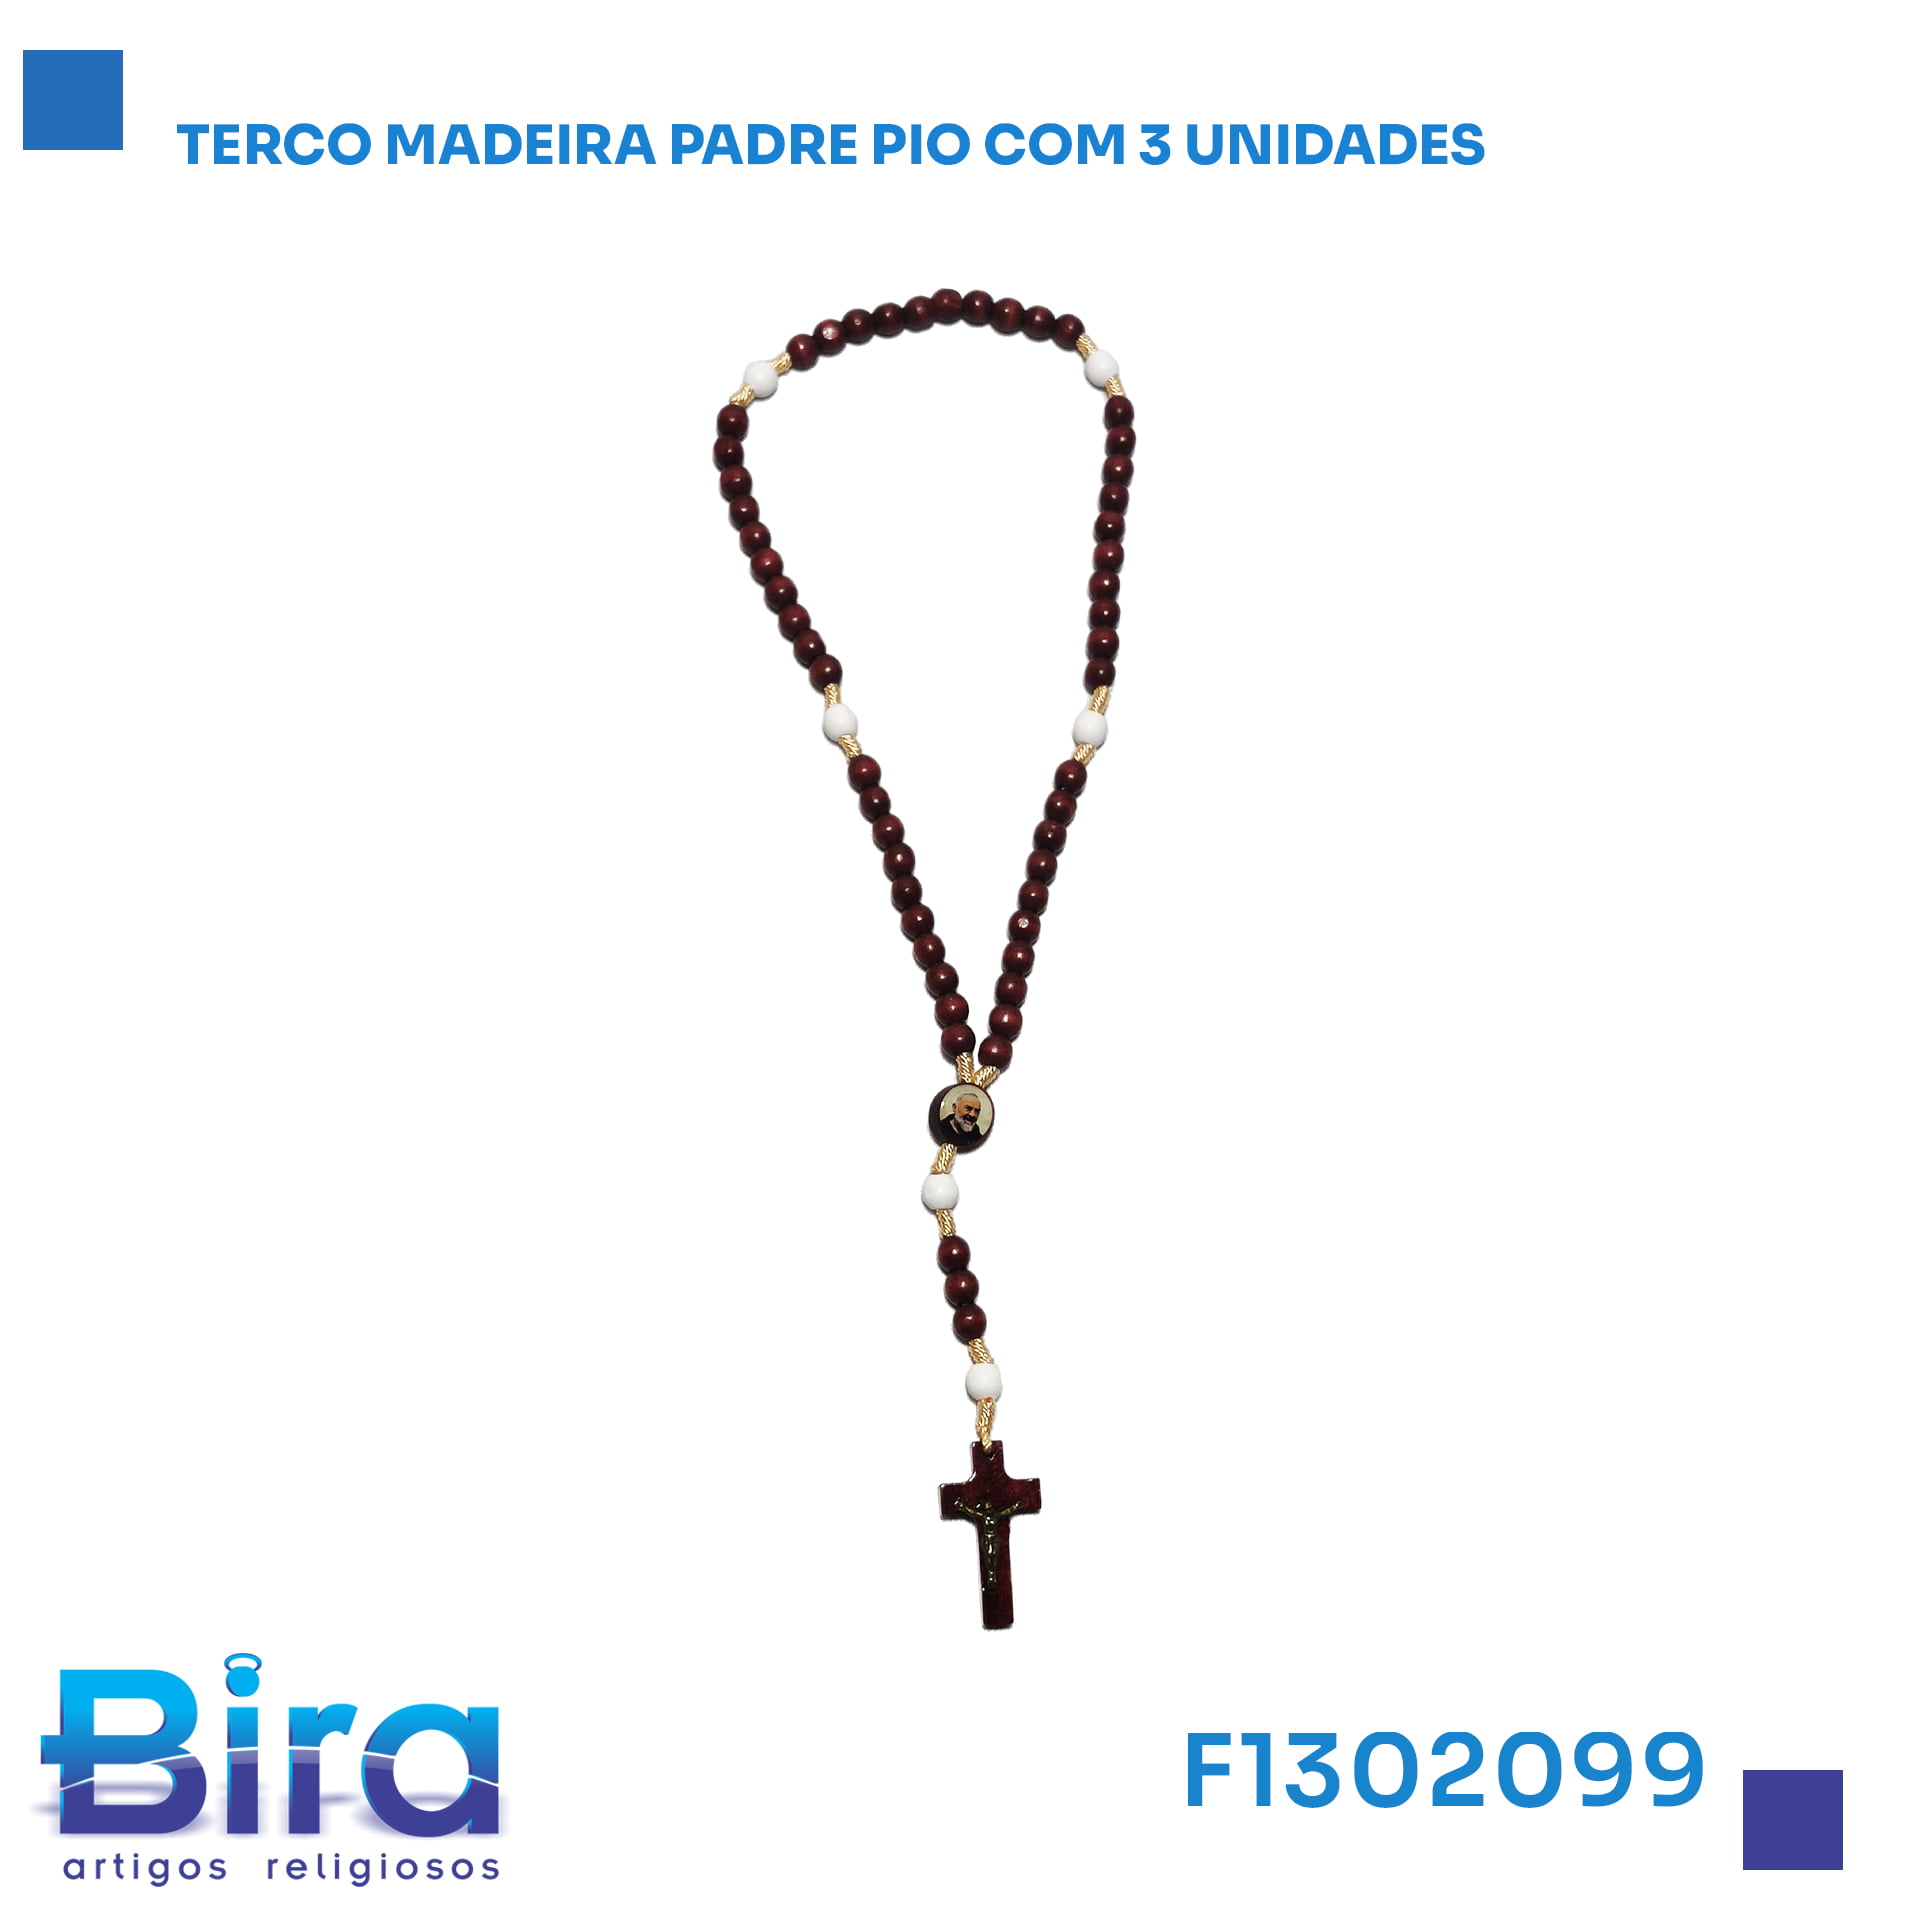 Bira Artigos Religiosos - TERCO MADEIRA PADRE PIO COM 3 UNIDADES   CÓD.: F1302099